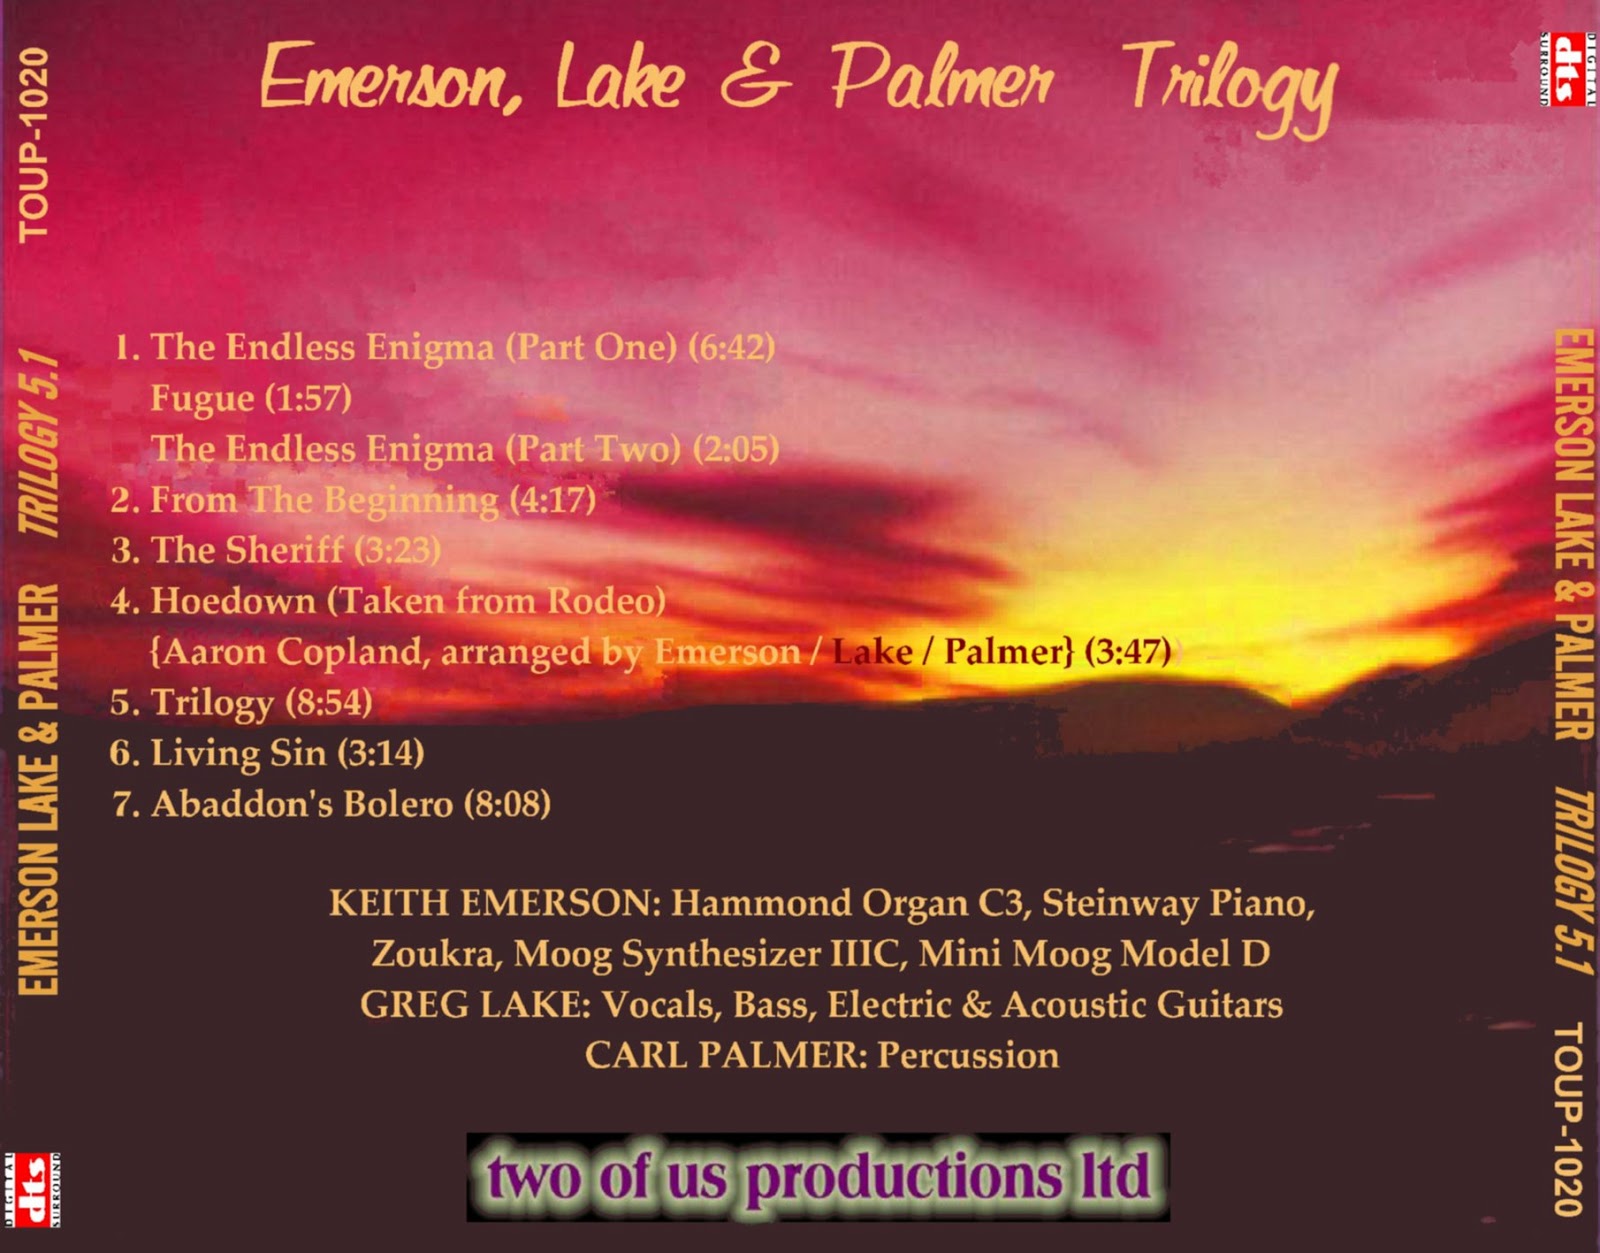 emerson lake and palmer trilogy rar files